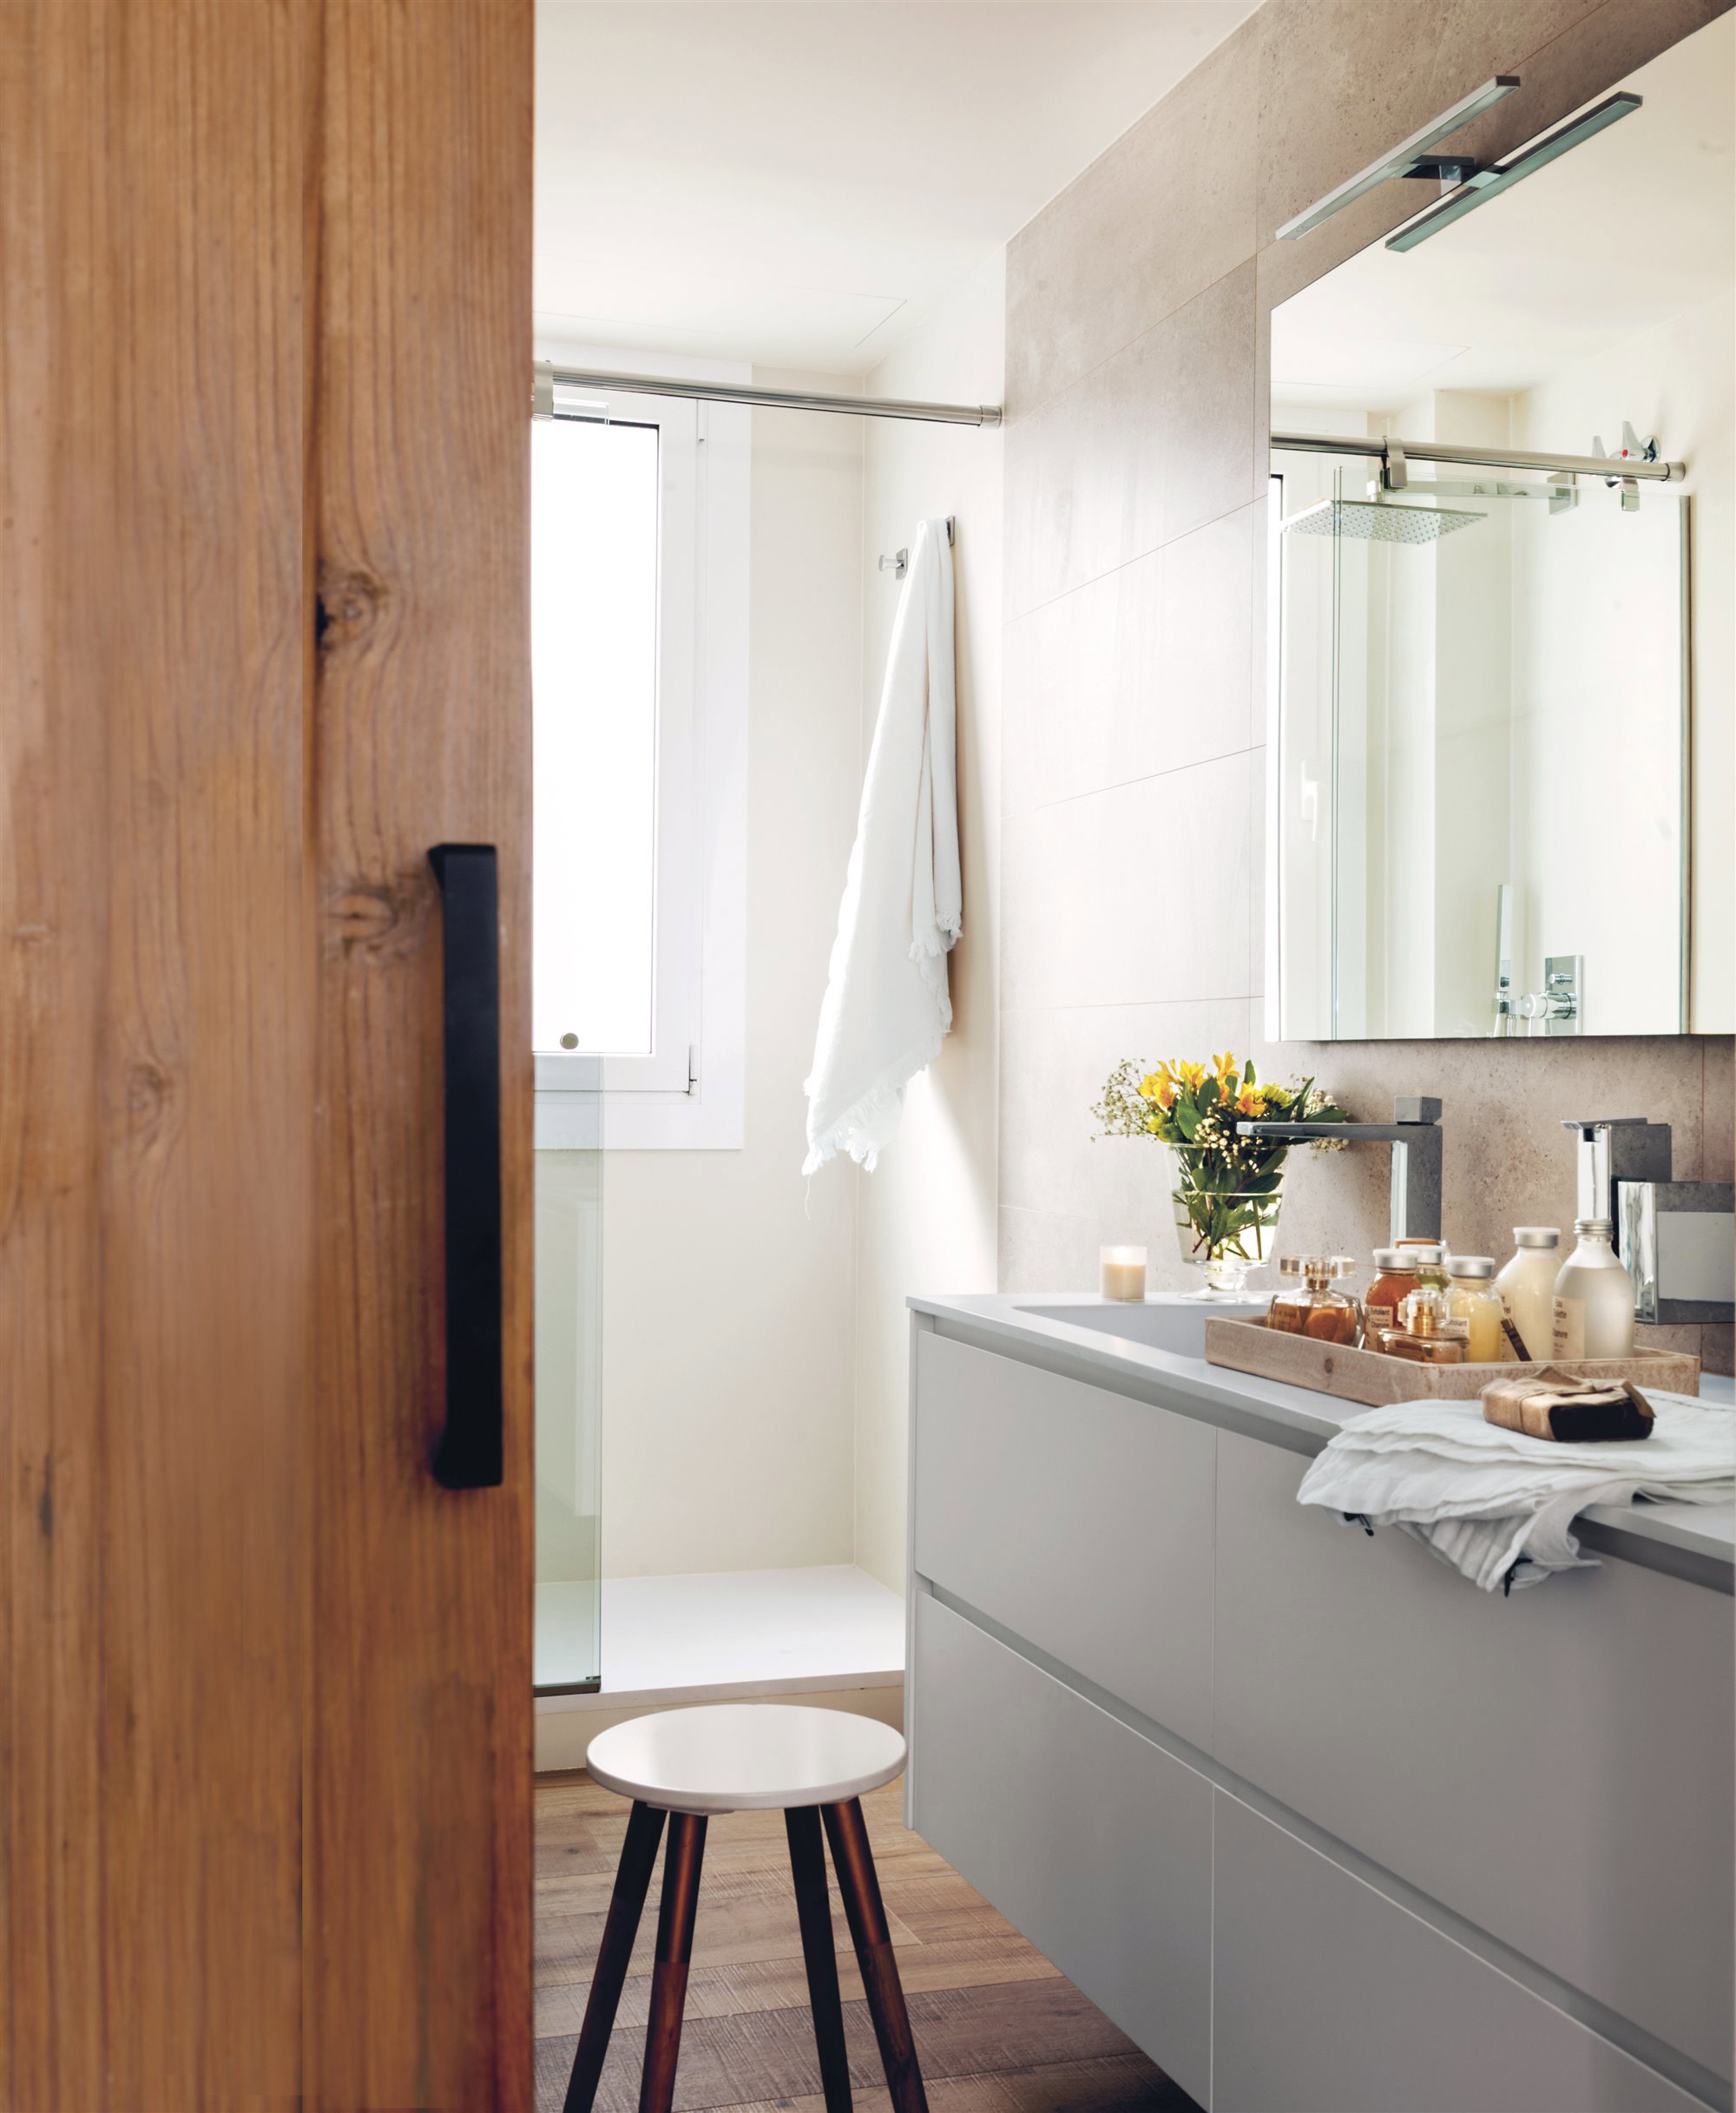 baño con puerta corredera de madera, ducha, mueble gris, taburete de madera y flores